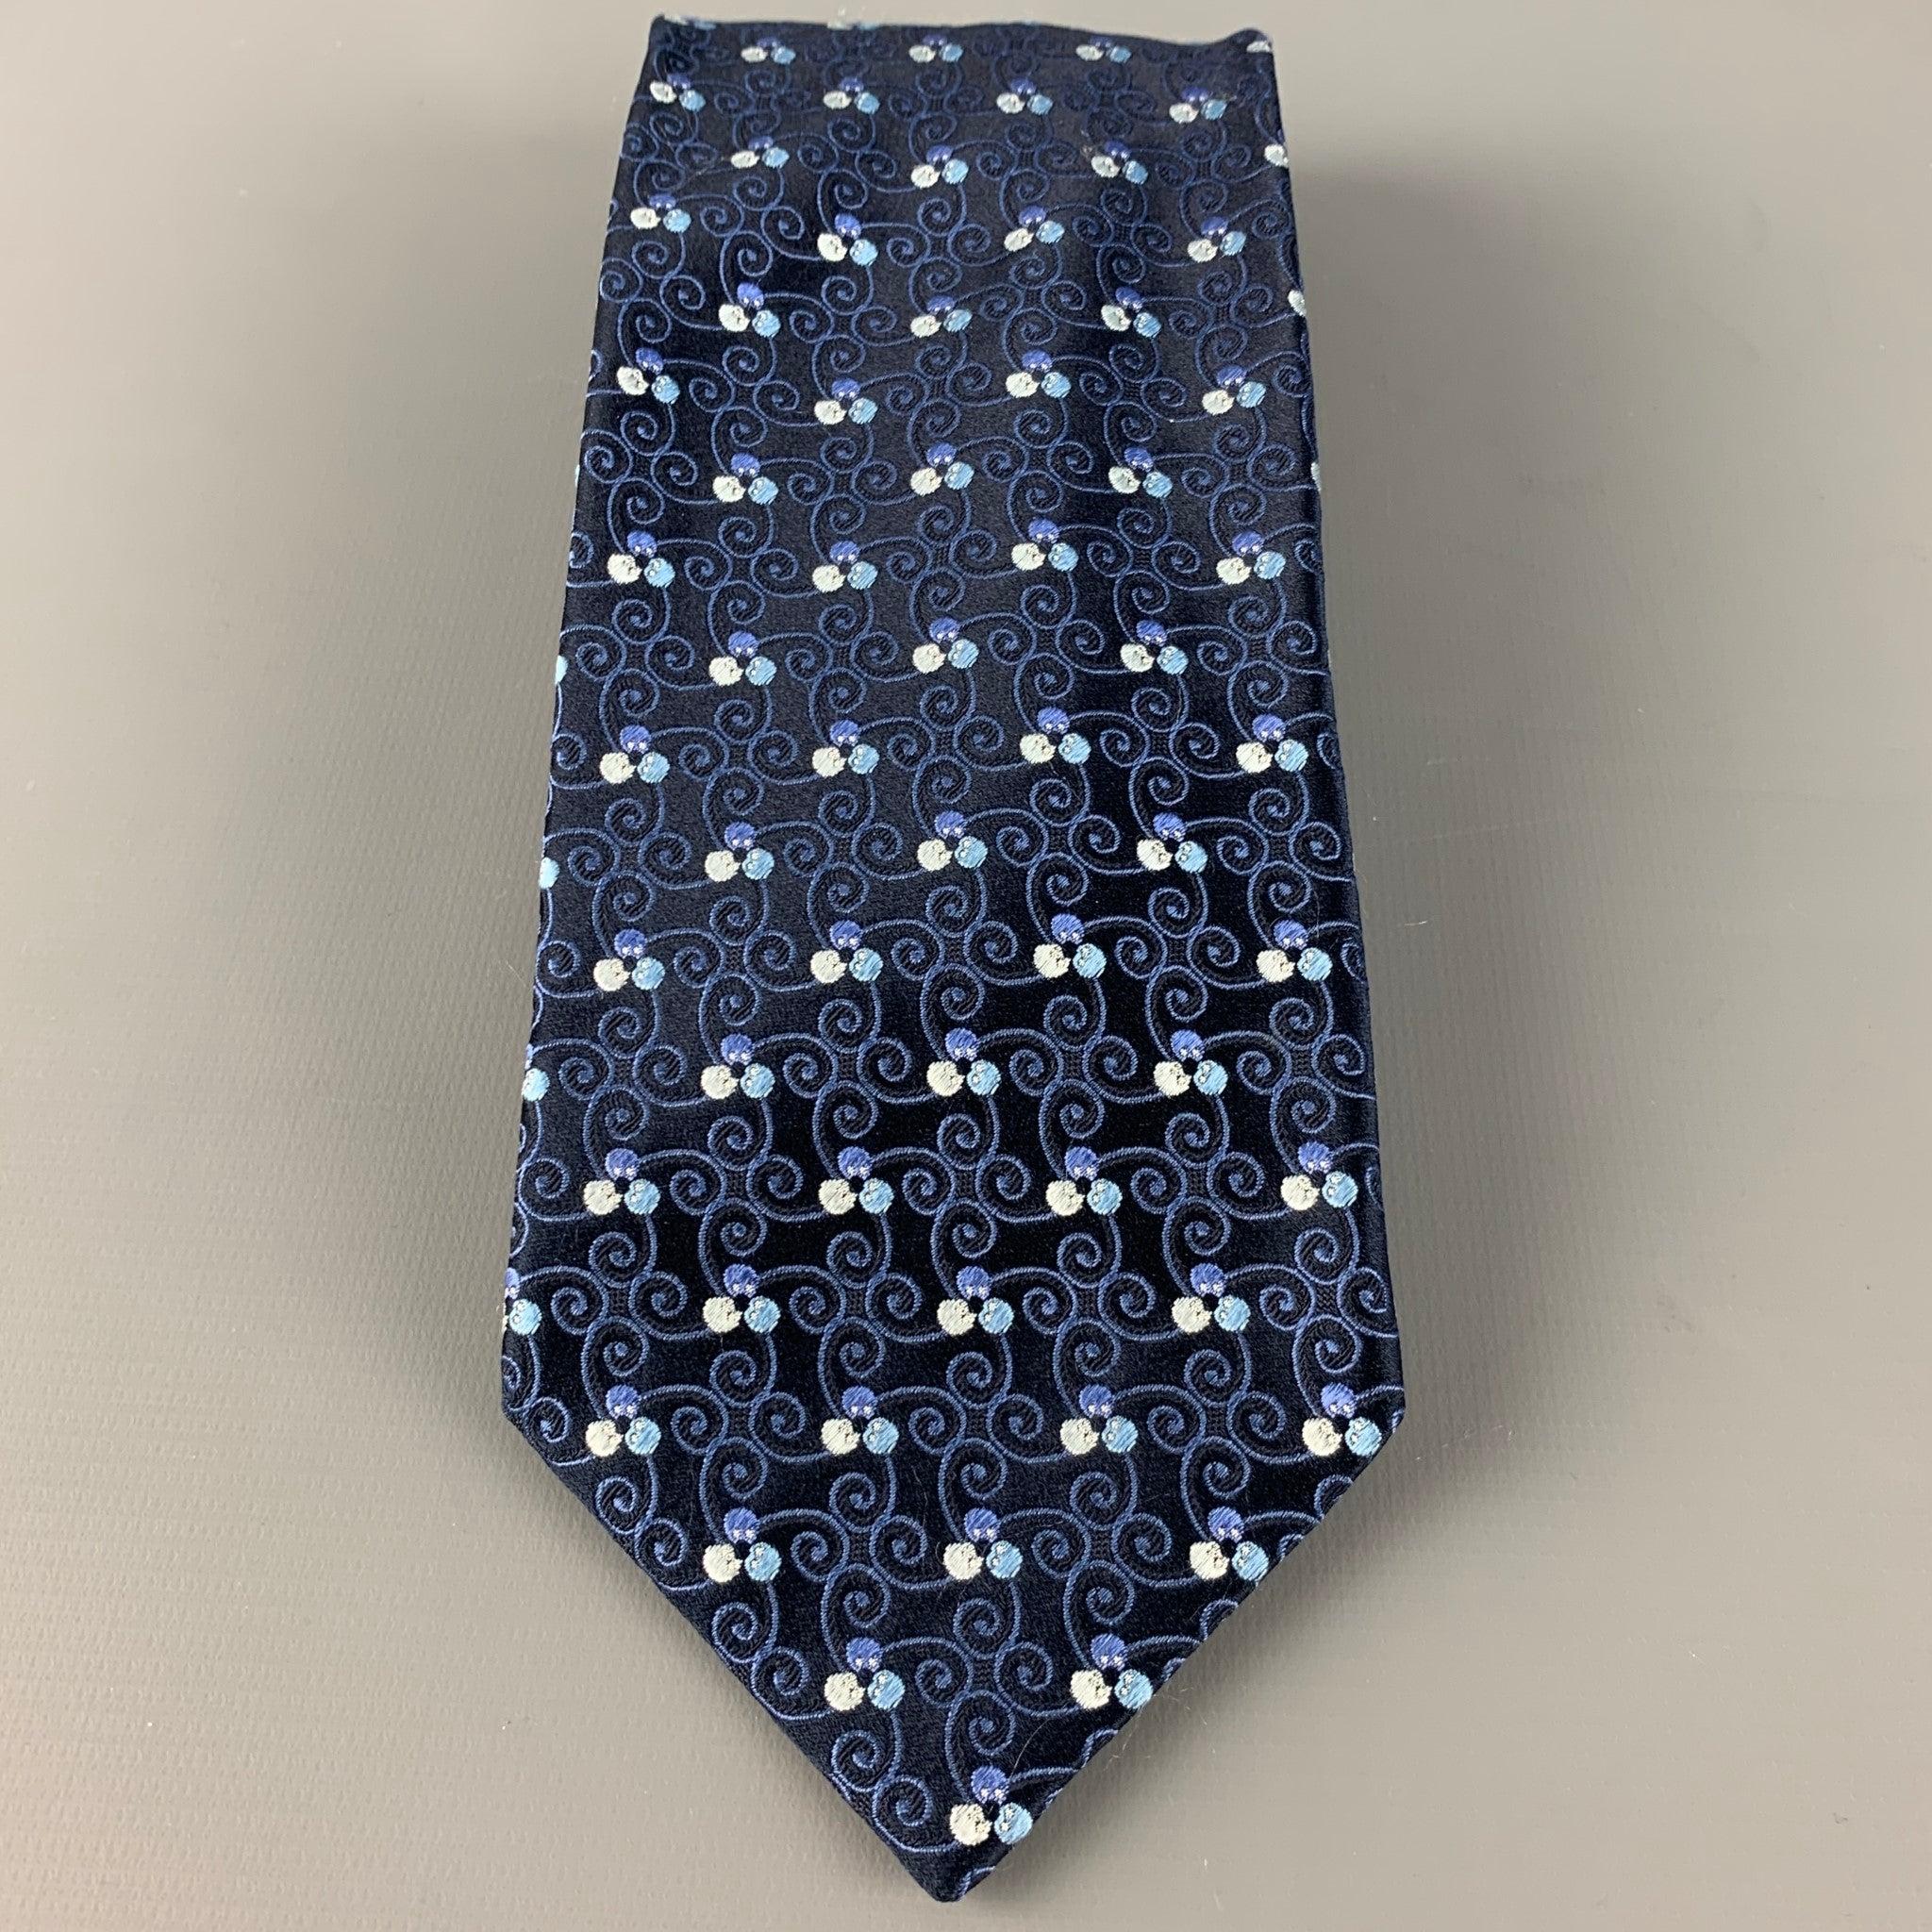 ERMENEGILDO ZEGNA Krawatte aus schwarzem Seidensatin mit einem blauen Wirbelmuster. Made in Italy. sehr guter gebrauchter Zustand. 

Abmessungen: 
  Breite: 3,5 Zoll Länge: 60 Zoll 
  
  
 
Sui Generis-Referenz: 126563
Kategorie: Krawatte
Mehr